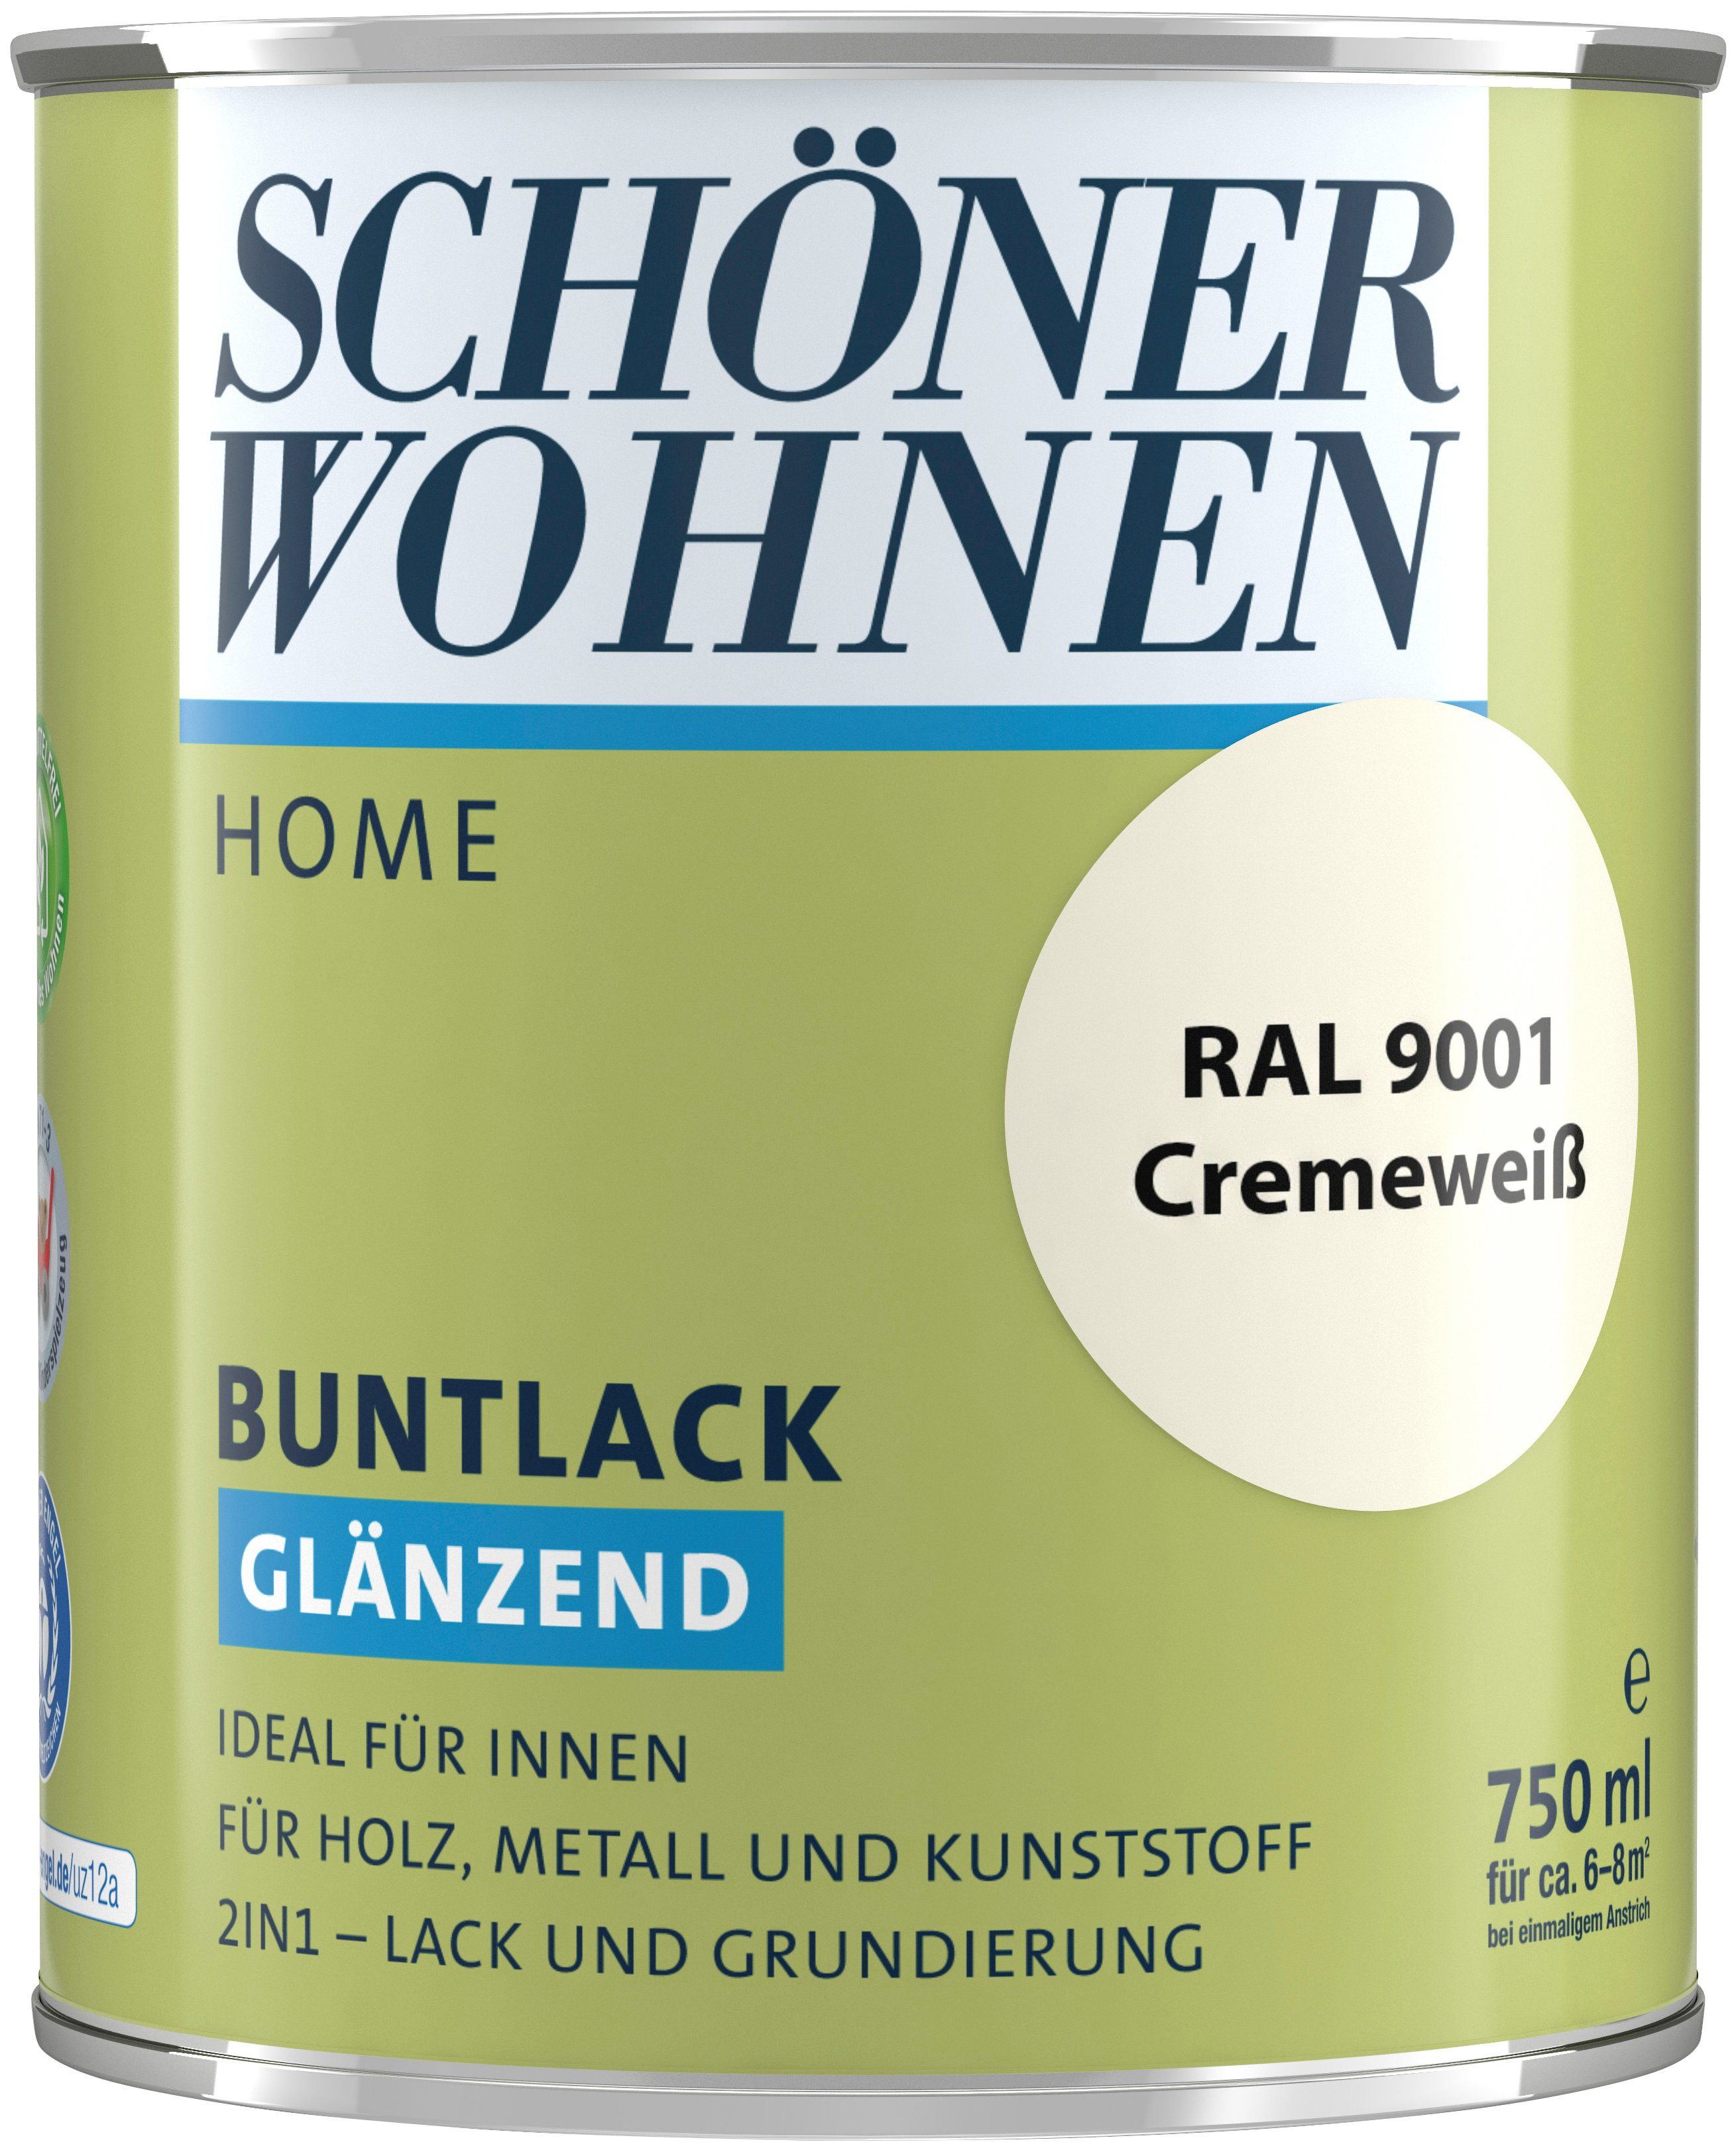 Home RAL glänzend, innen, cremeweiß ml, WOHNEN FARBE SCHÖNER ideal 9001, für Buntlack, 2in1-Lack Lack 750